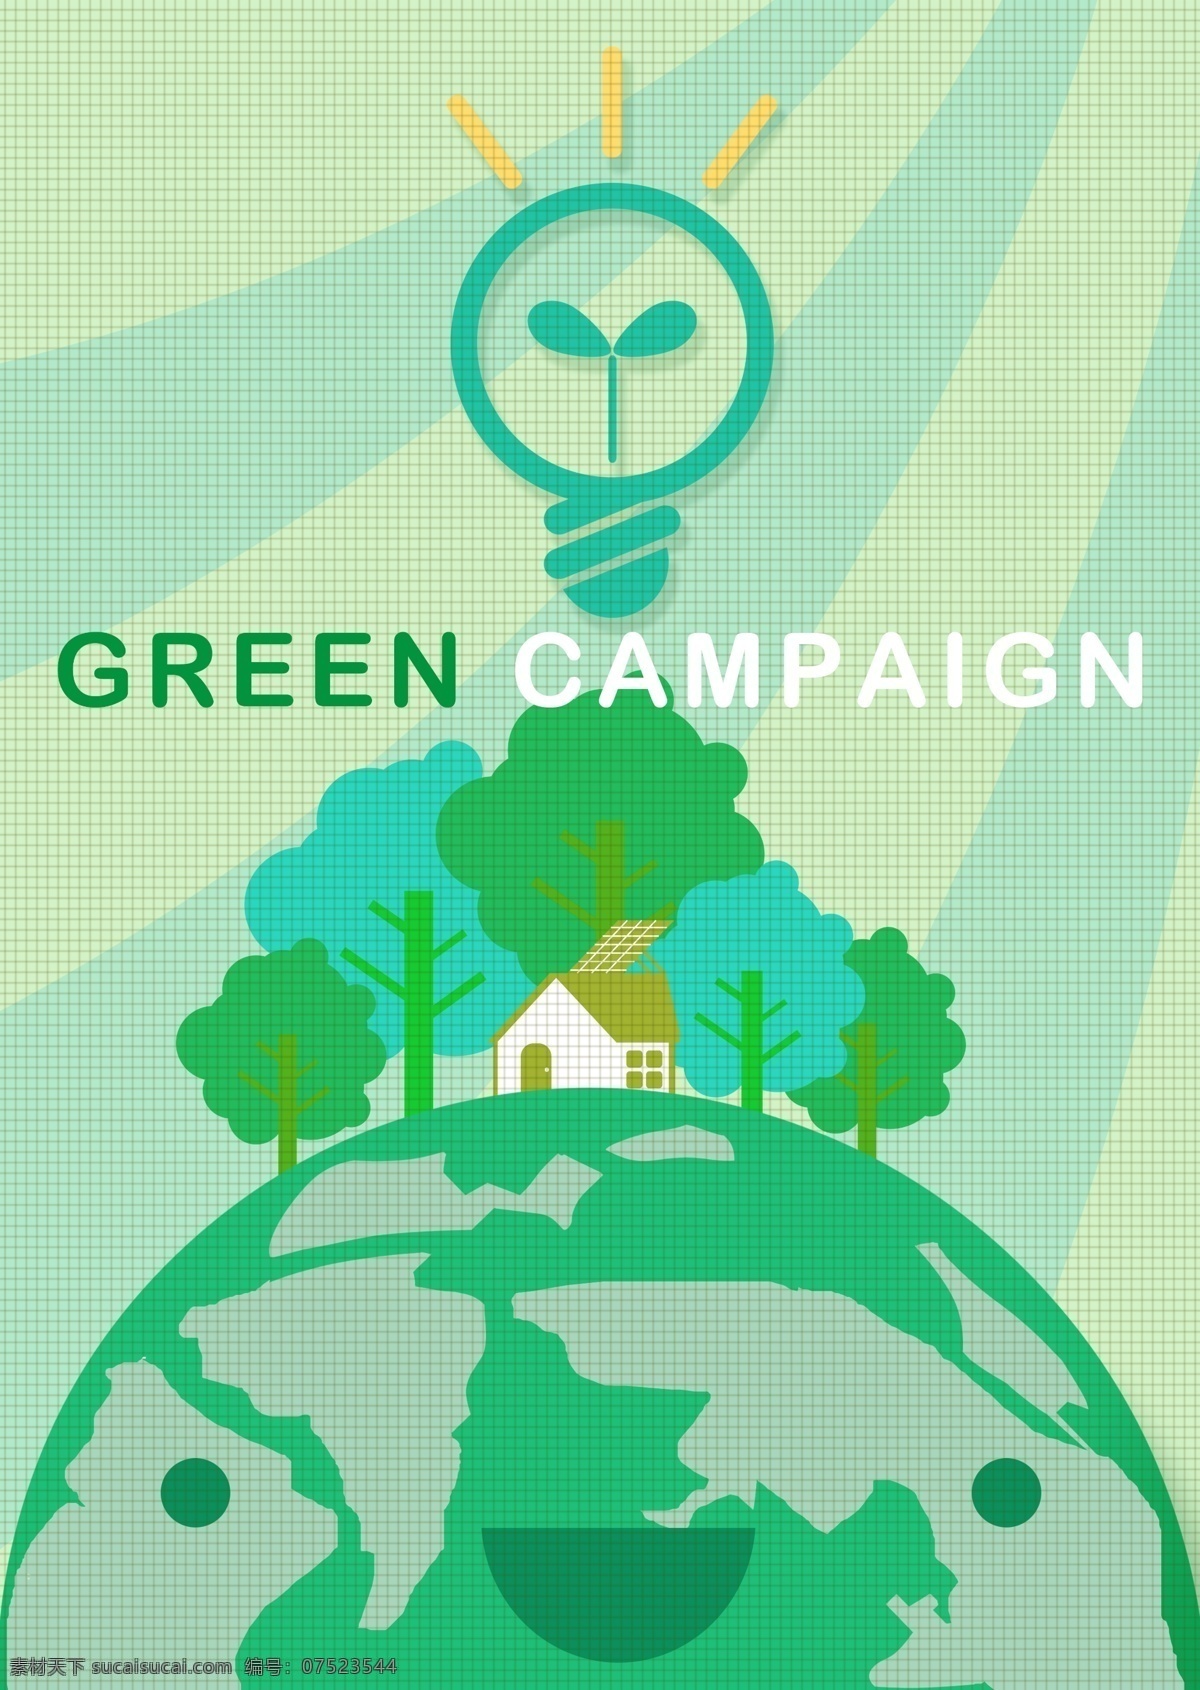 卡通 地球 树木 房屋 绿色环保 环境保护 环保 节能 绿色能源 生态保护 生态平衡 绿色地球 草地 广告设计模板 psd素材 绿色